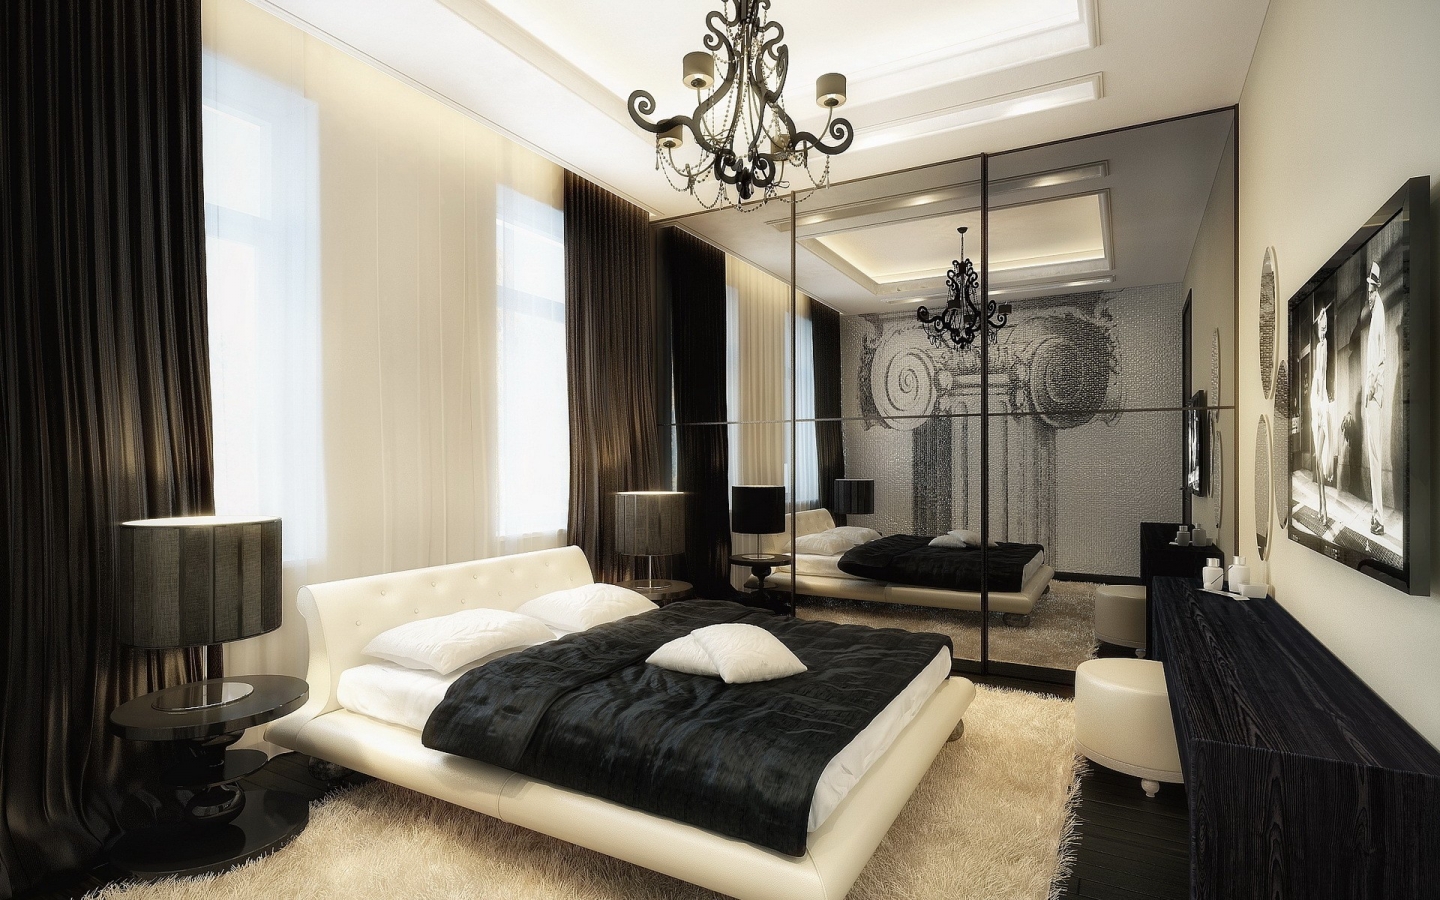 Splendid Bedroom Design for 1440 x 900 widescreen resolution